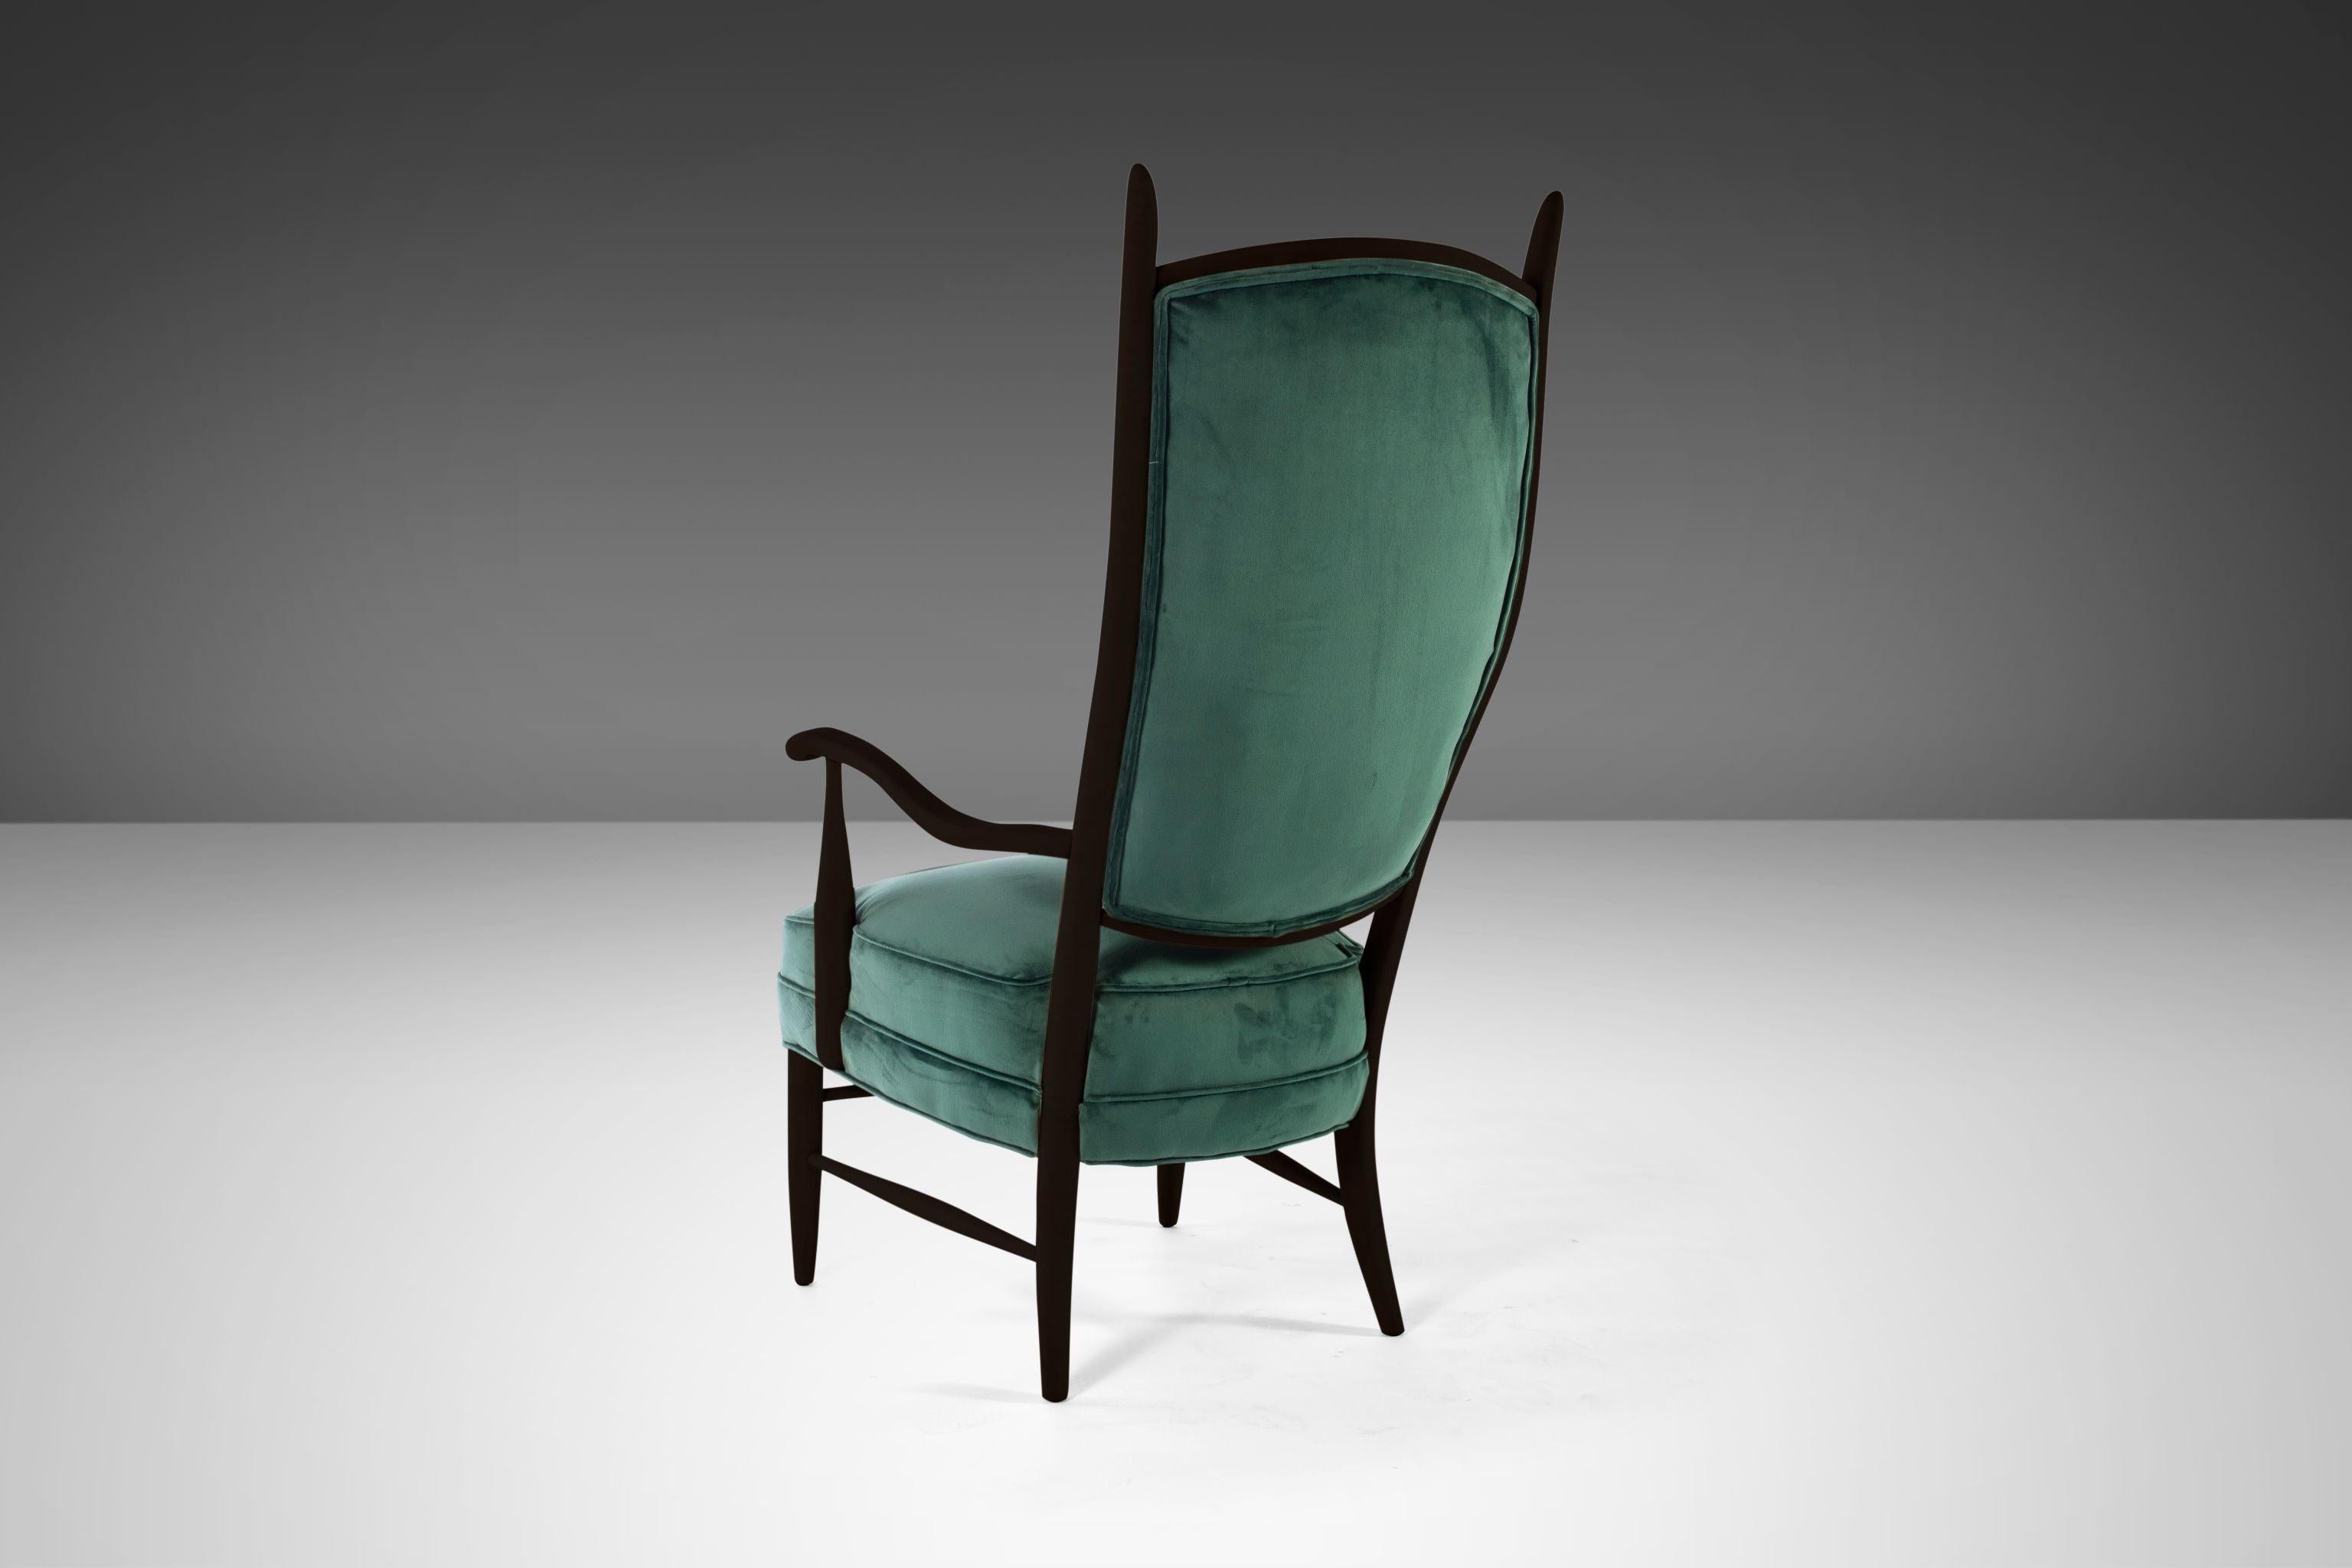 Une grande et remarquable paire de fauteuils en bois ébénisé avec des dossiers coniques en forme de corne souvent attribués à Edward Wormley pour Dunbar. Les chaises sont très stylisées et influencées par les dessins du fabricant de meubles italien